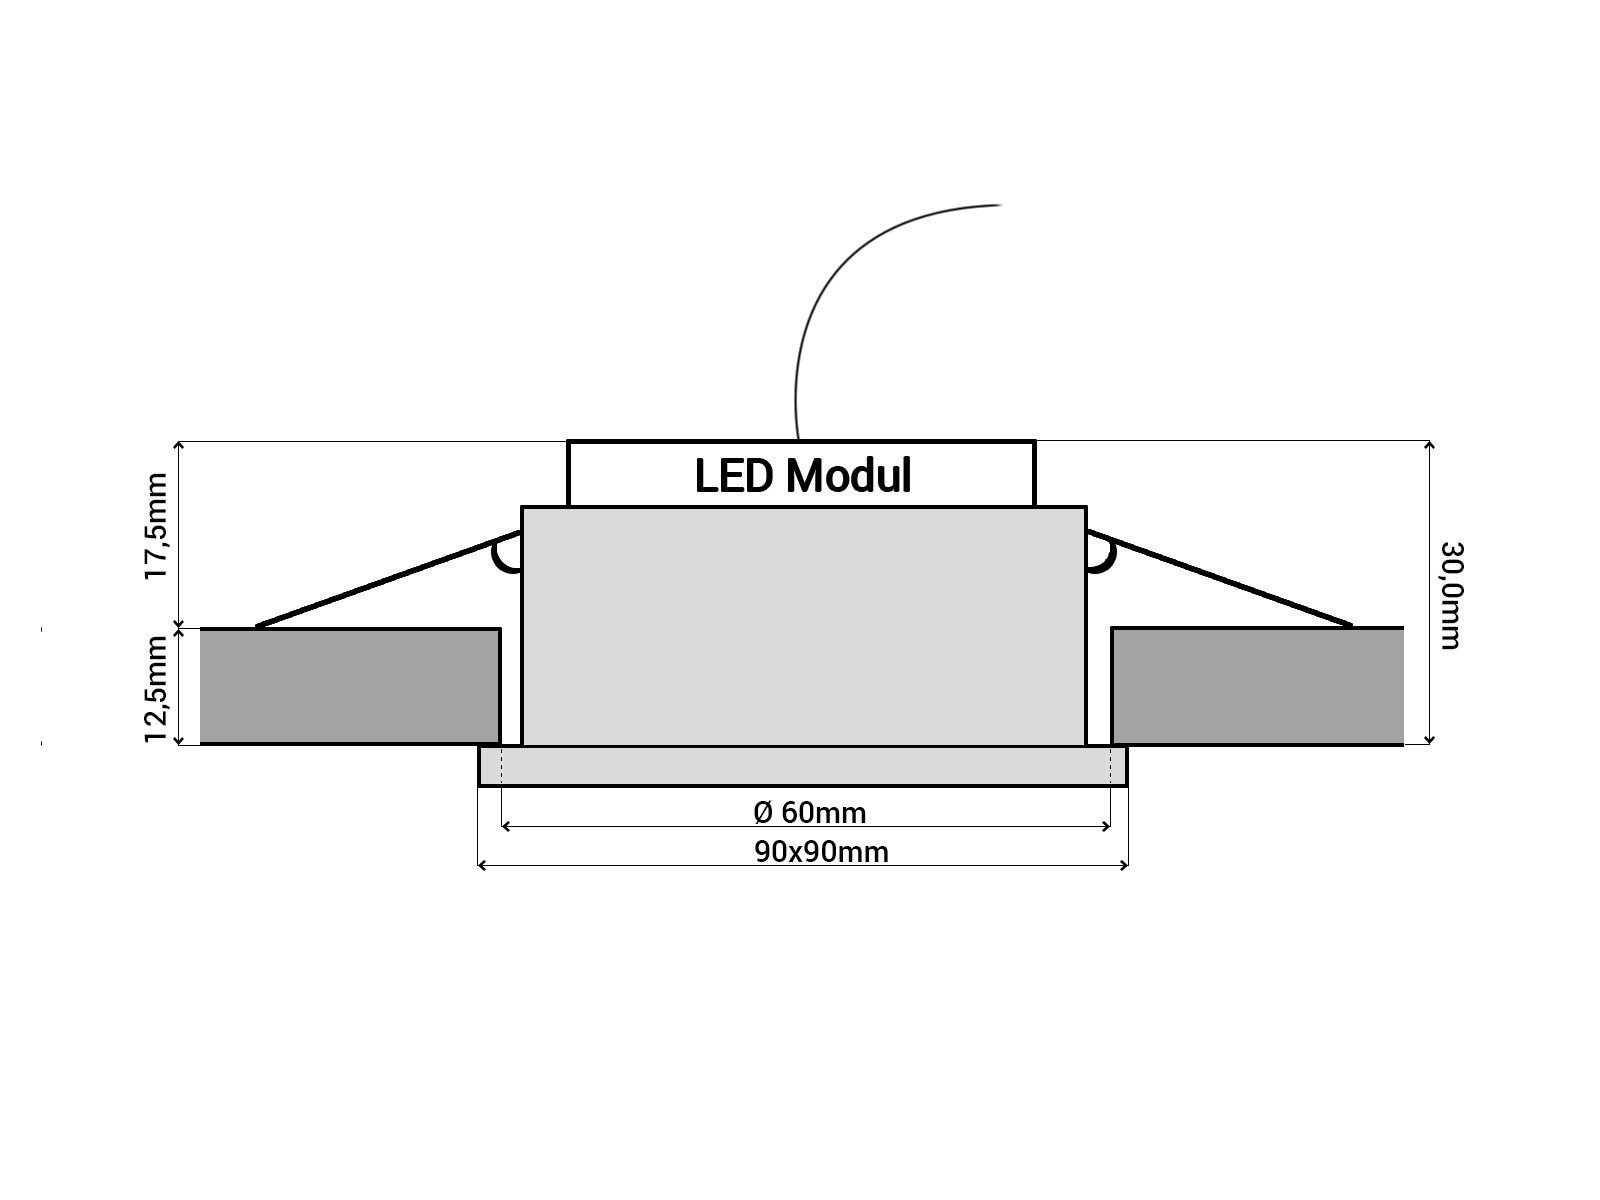 Glas Design aus klar spiegelnd, quadratisch SSC-LUXon LED, Einbaustrahler Warmweiß Flacher LED Einbaustrahler